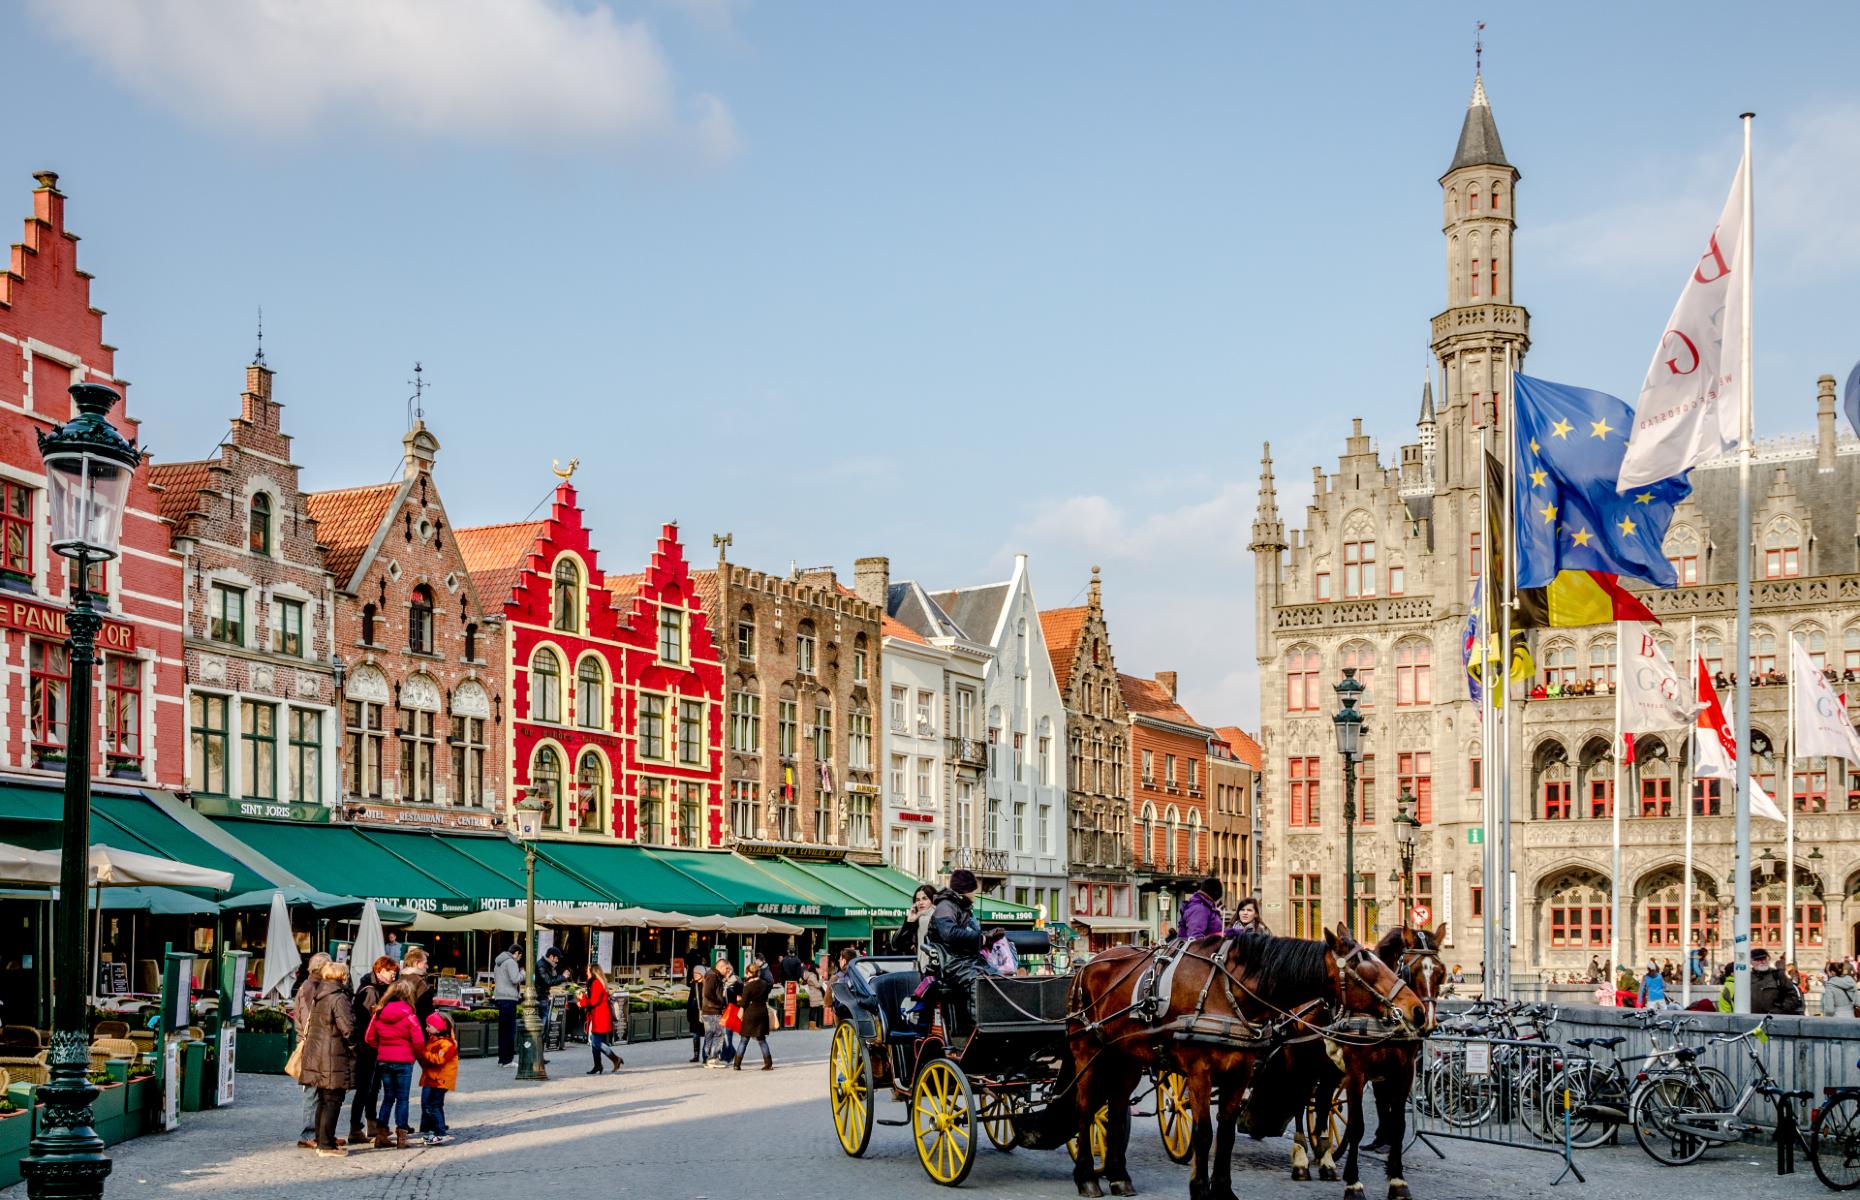 Market Square, Bruges (Image: AMzPhoto/Shutterstock)